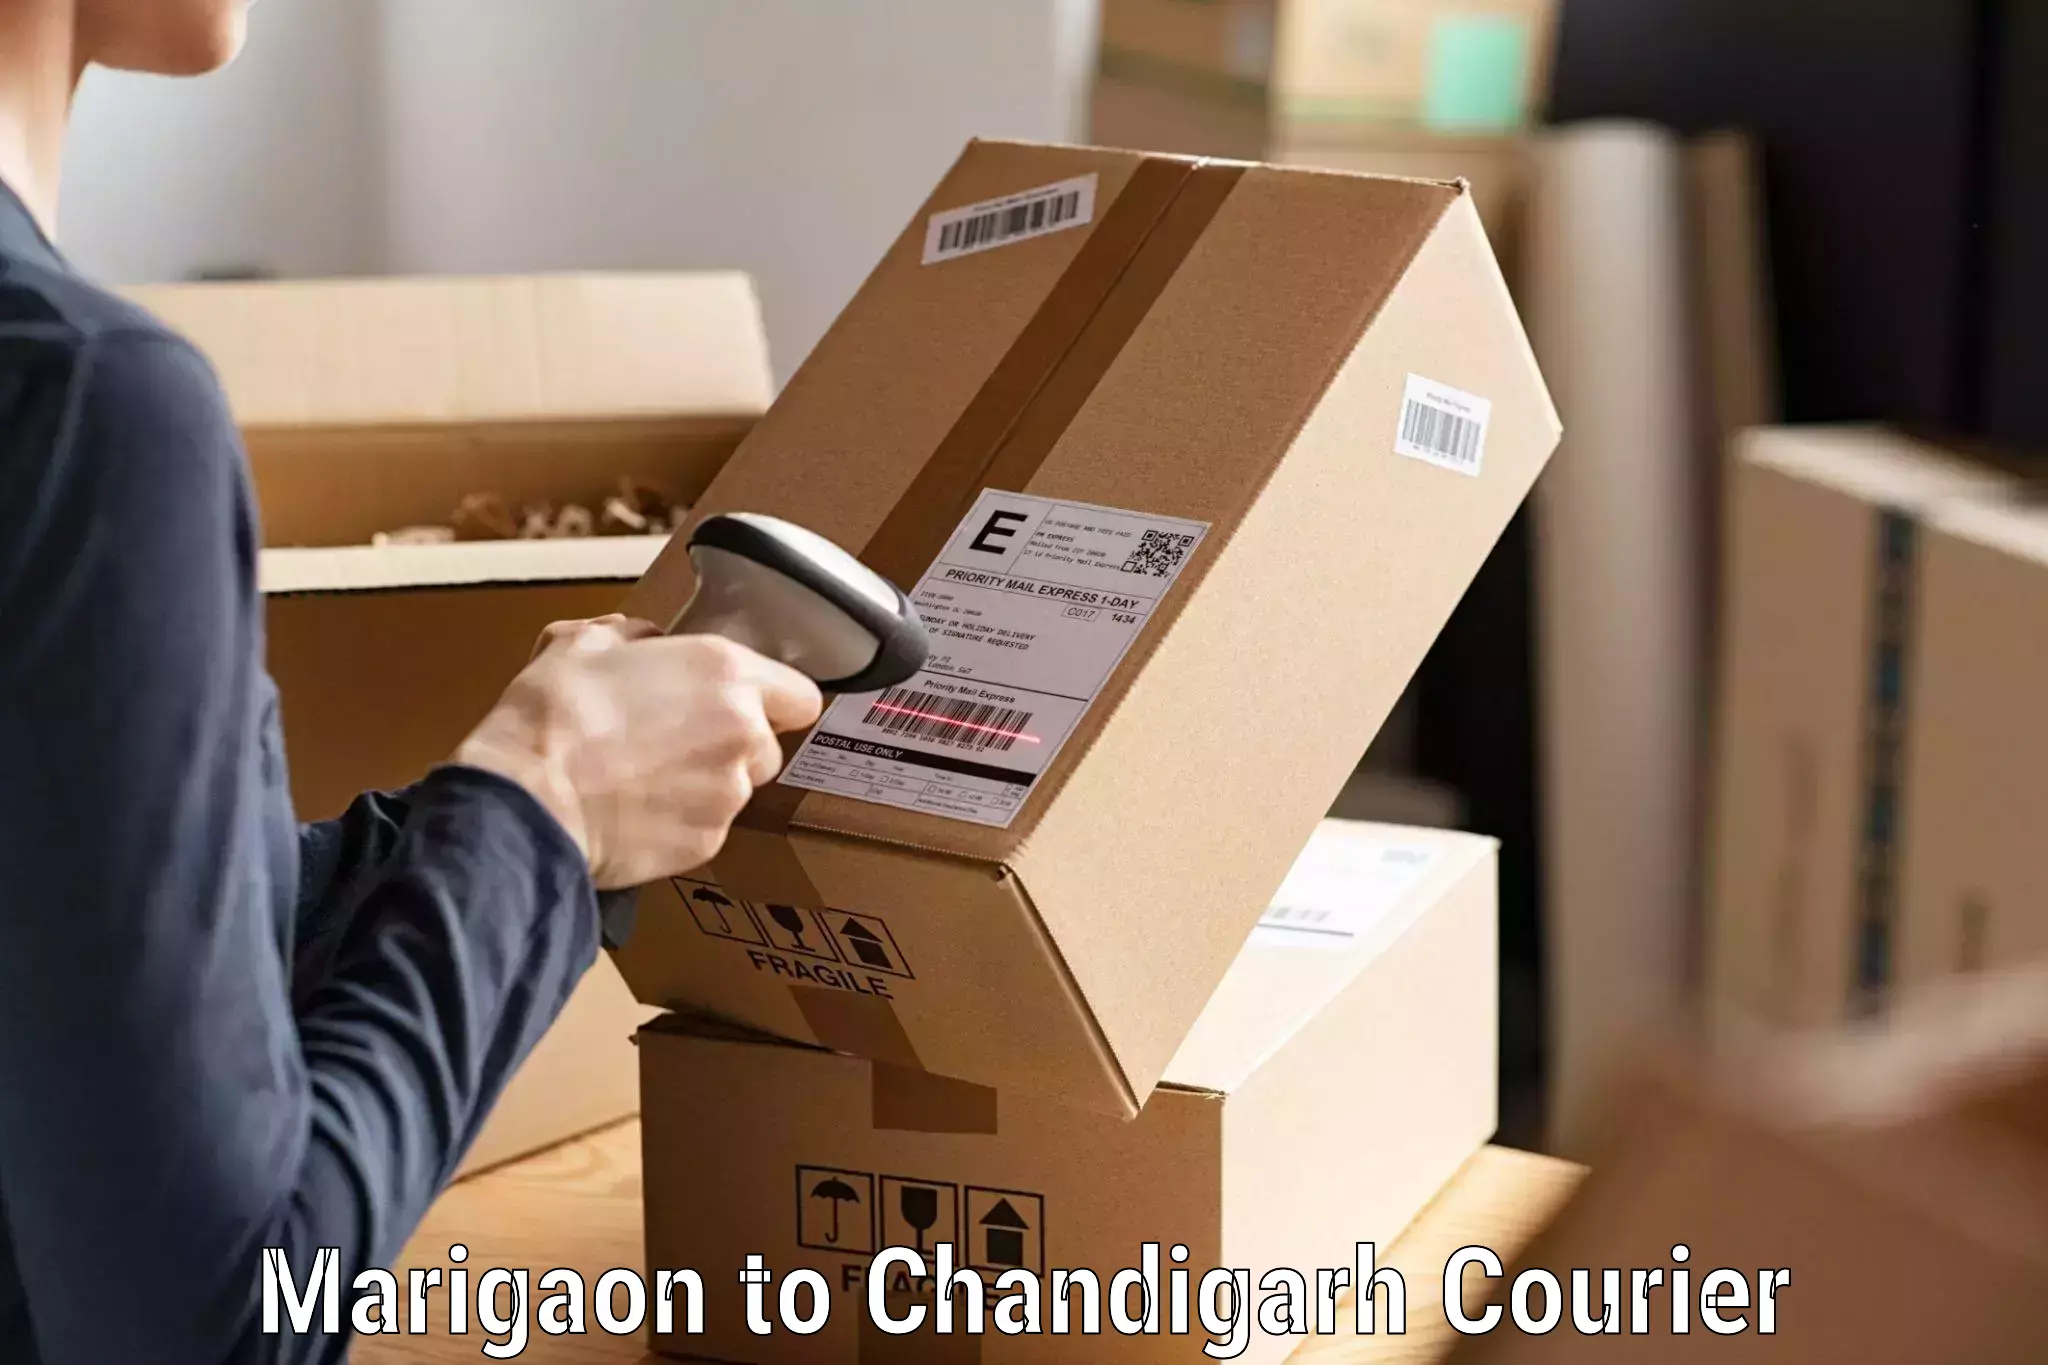 Premium courier services Marigaon to Chandigarh